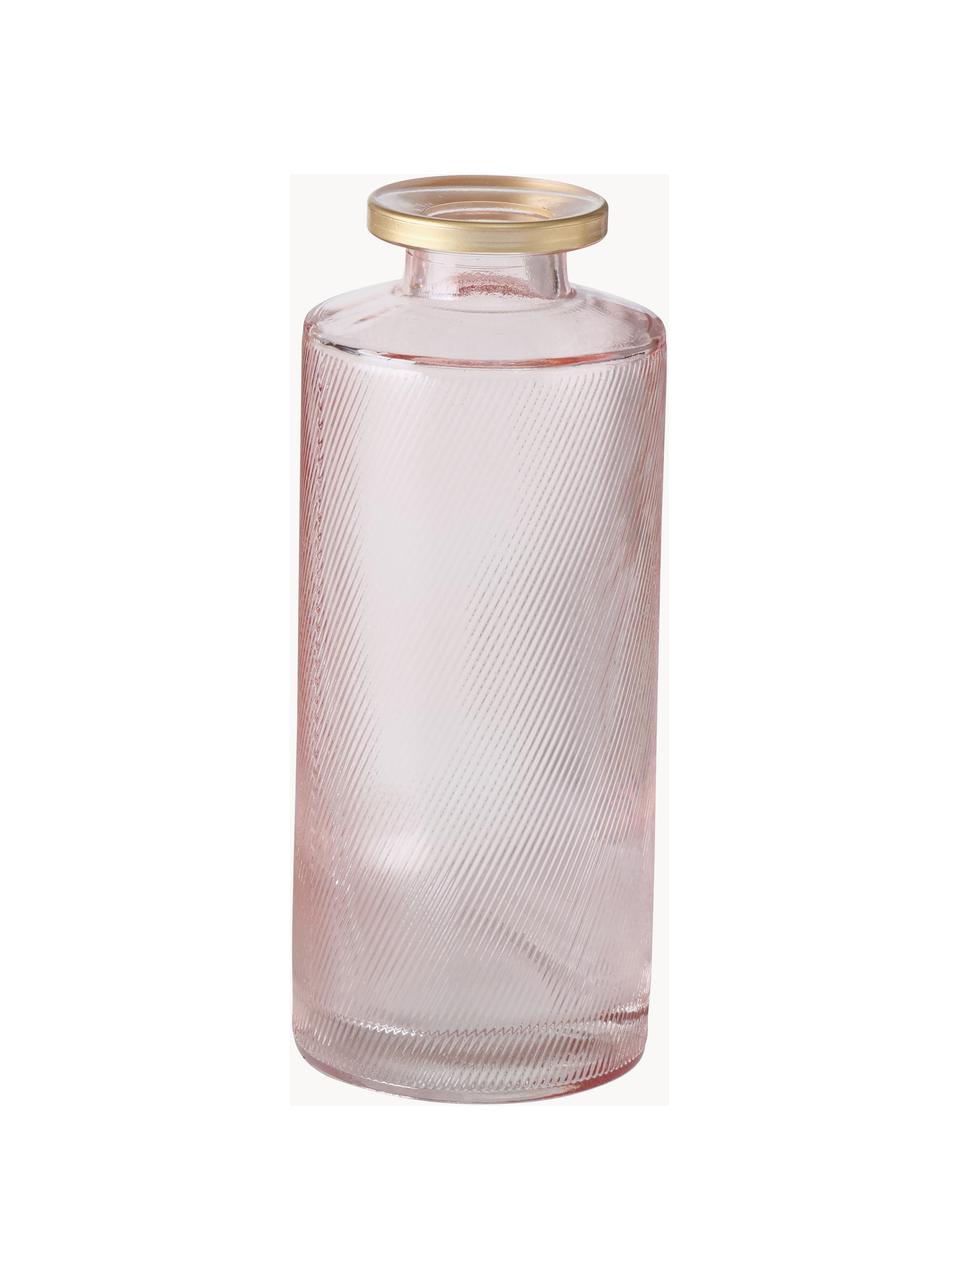 Kleine Vasen Adore aus Glas, 3er-Set, Glas, gefärbt, Hellrosa, transparent, Silberfarben, Ø 5 x H 13 cm